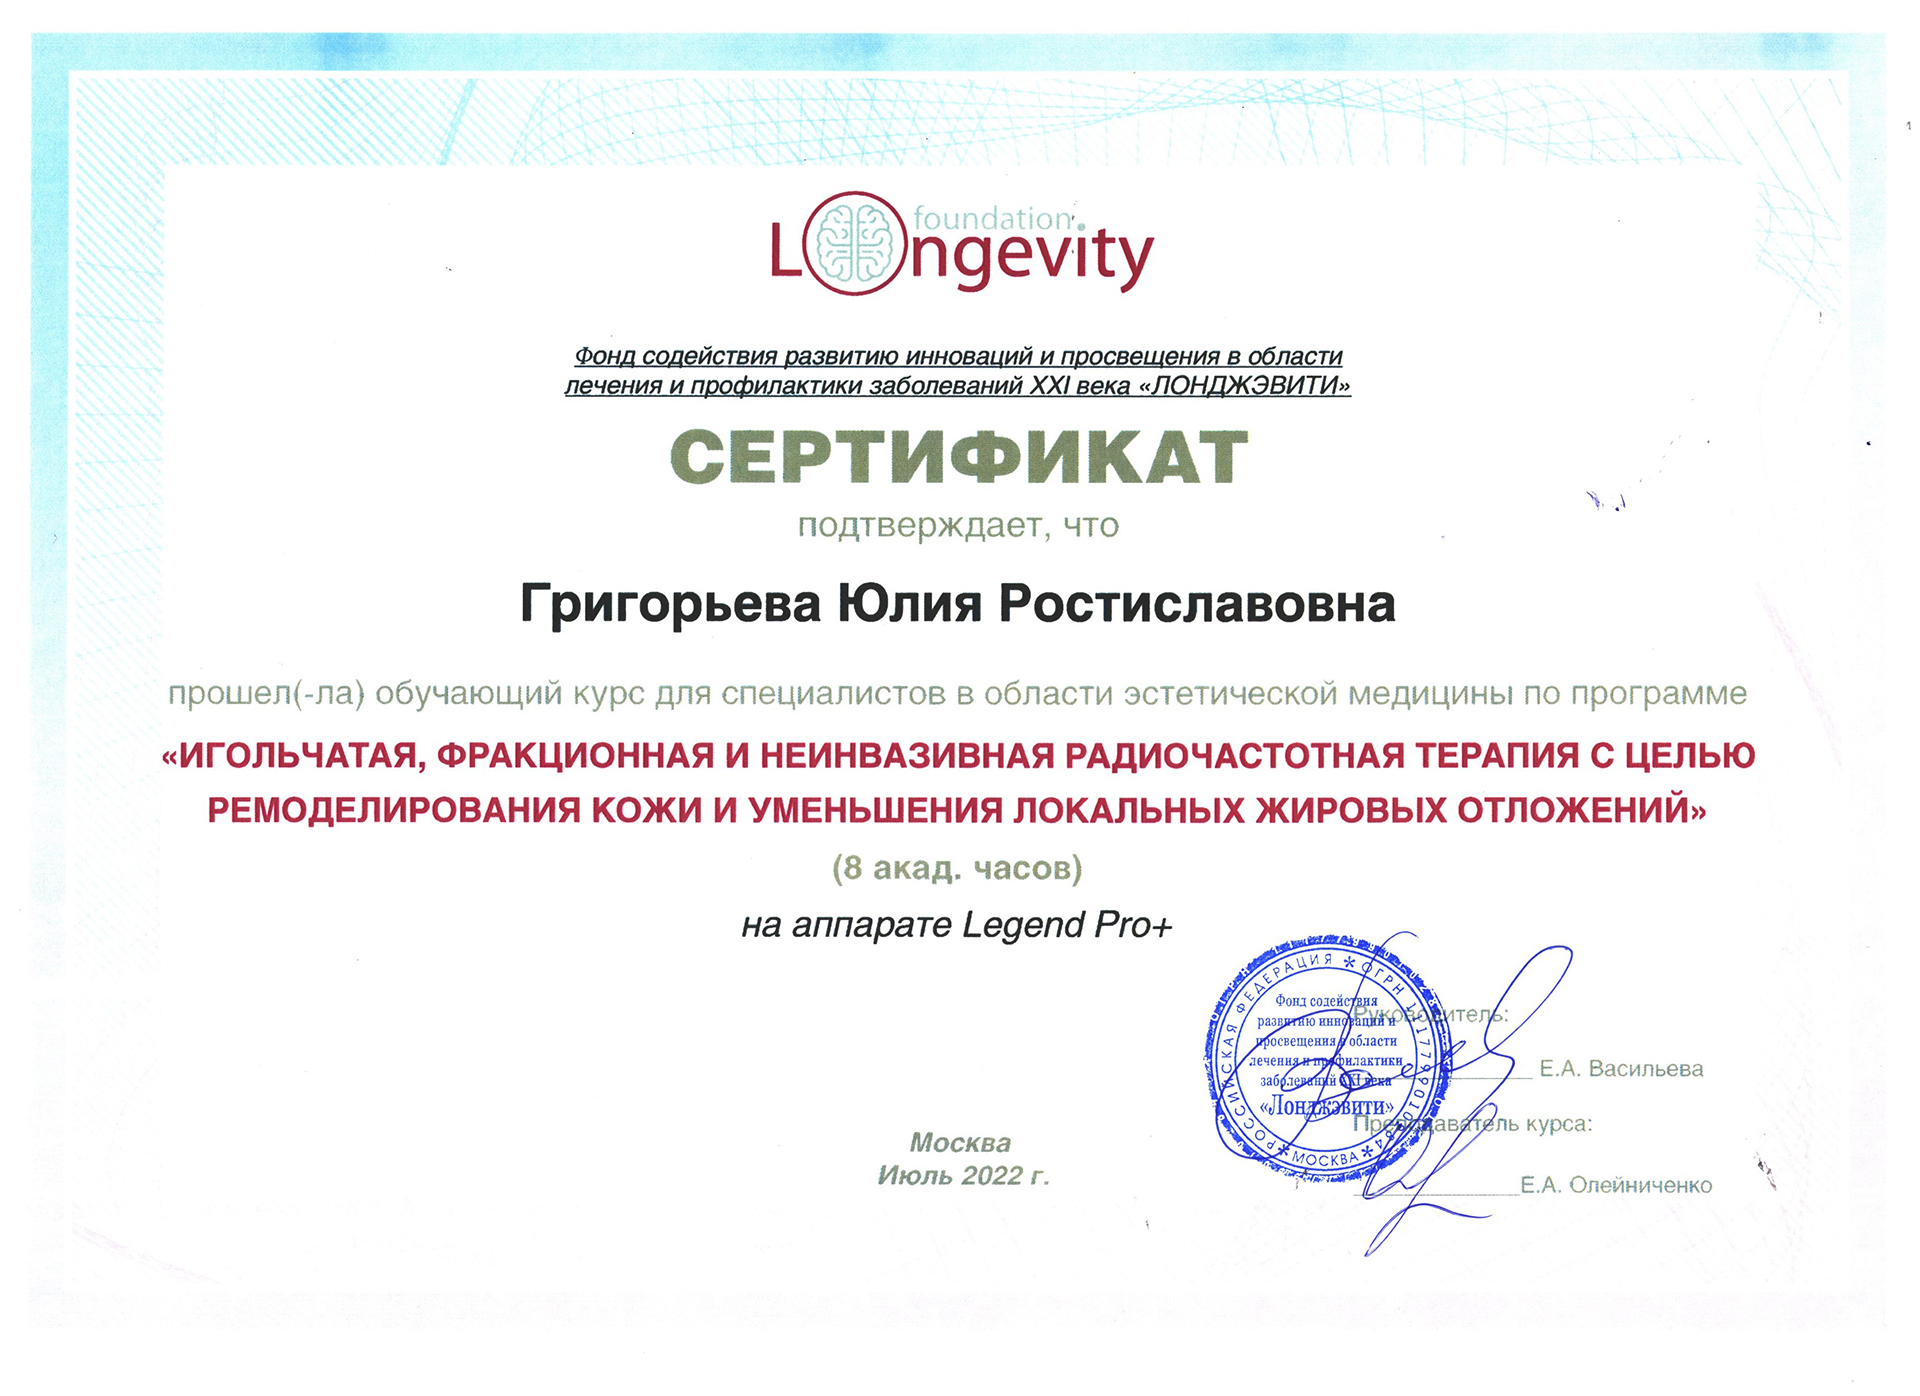 Сертификат — Программа «Игольчатая, фракционная и неинвазивная радиочастотная терапия». Григорьева Юлия Ростиславовна